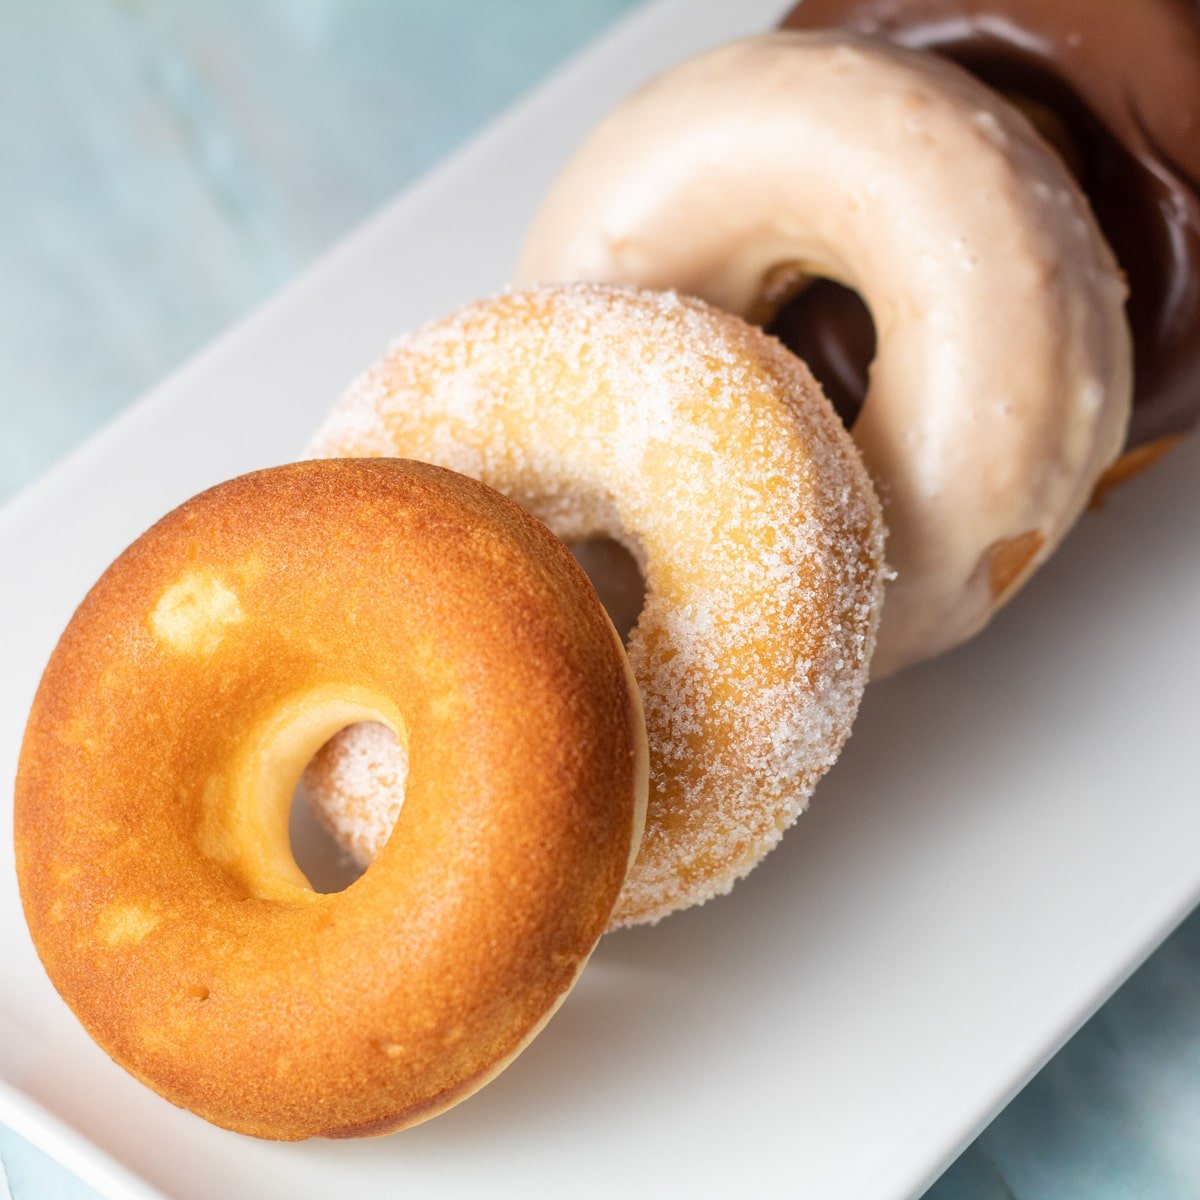 Imagen cuadrada de un surtido de donuts horneados.